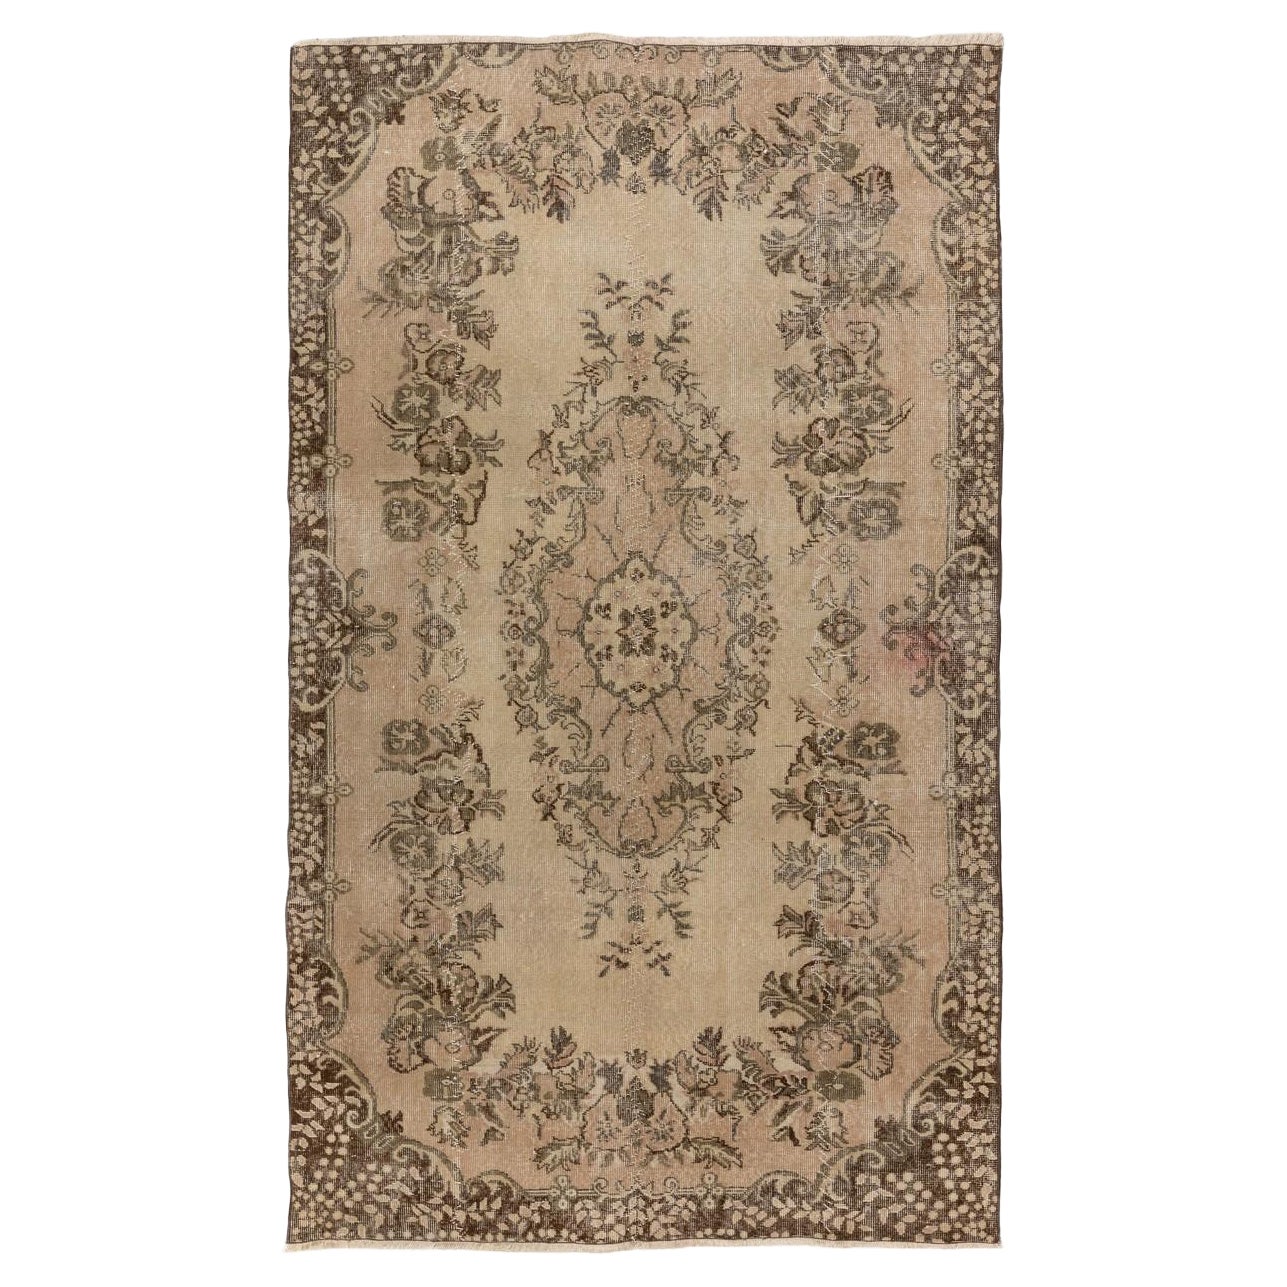 5.4x9 Ft Room Size Handmade Vintage Turkish Area Rug, Baroque Design Carpet For Sale